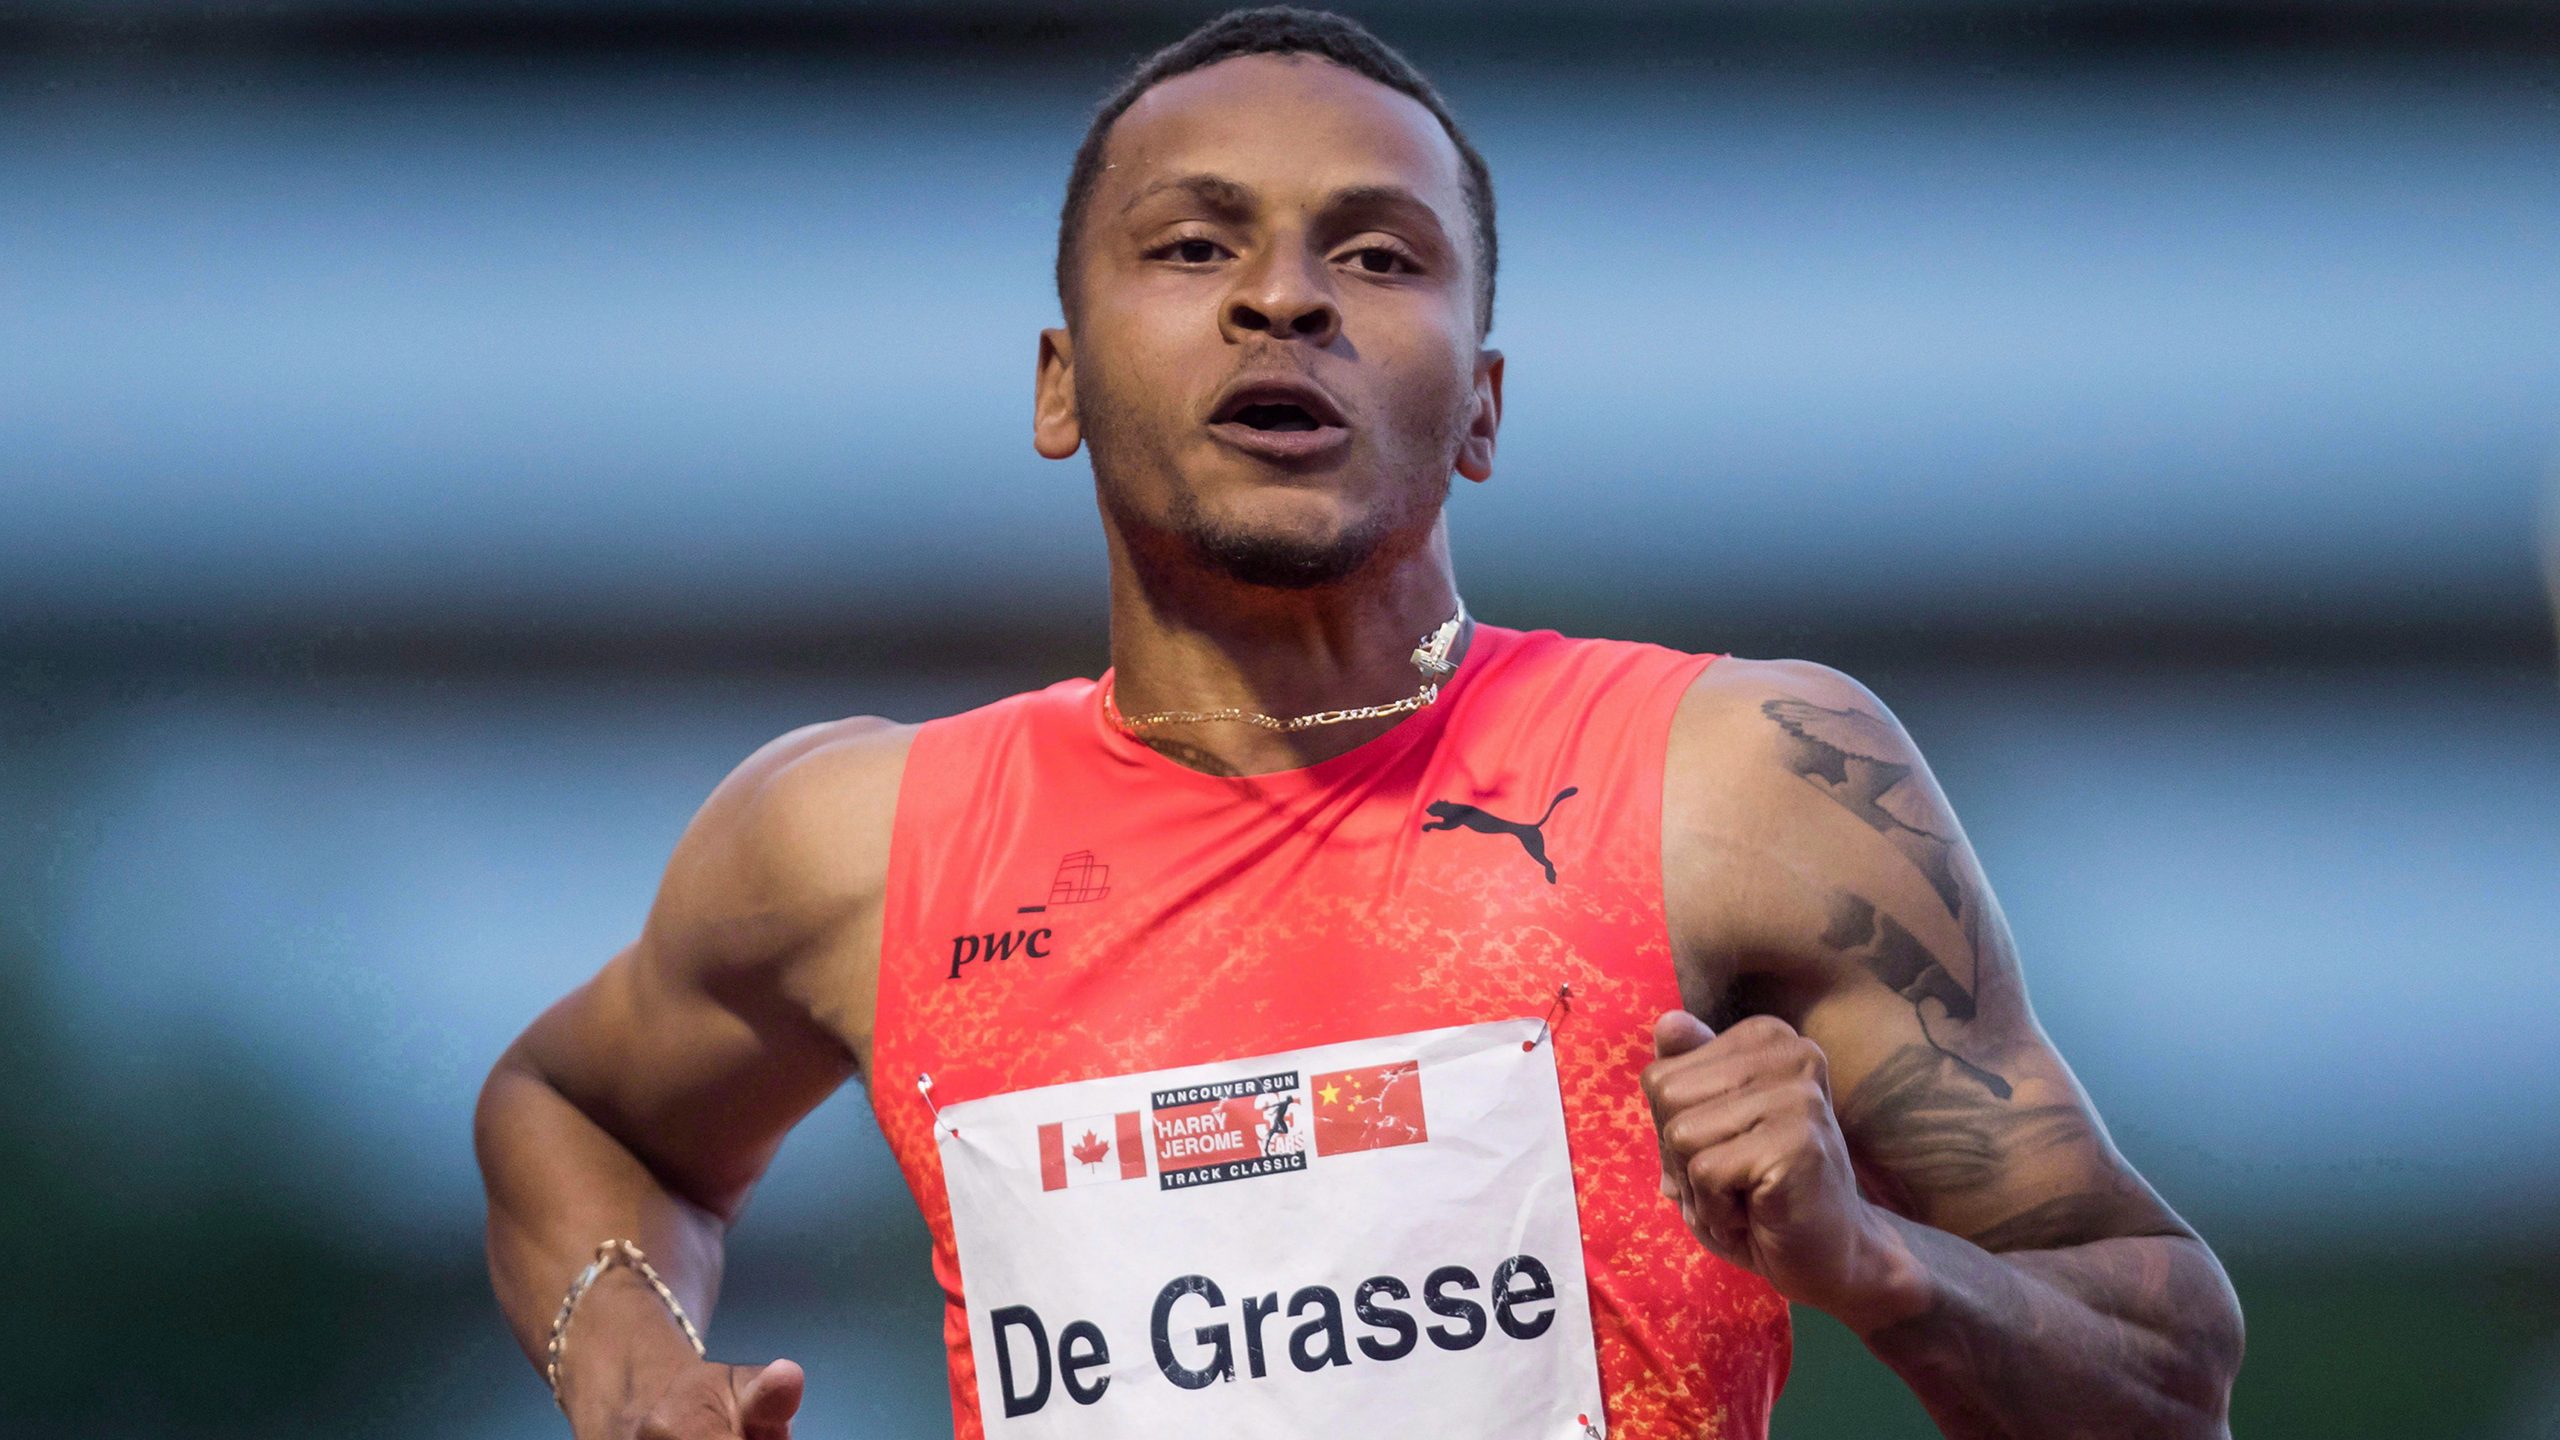 De Grasse no califica, el canadiense Mitton superó el bronce en el mundial de atletismo